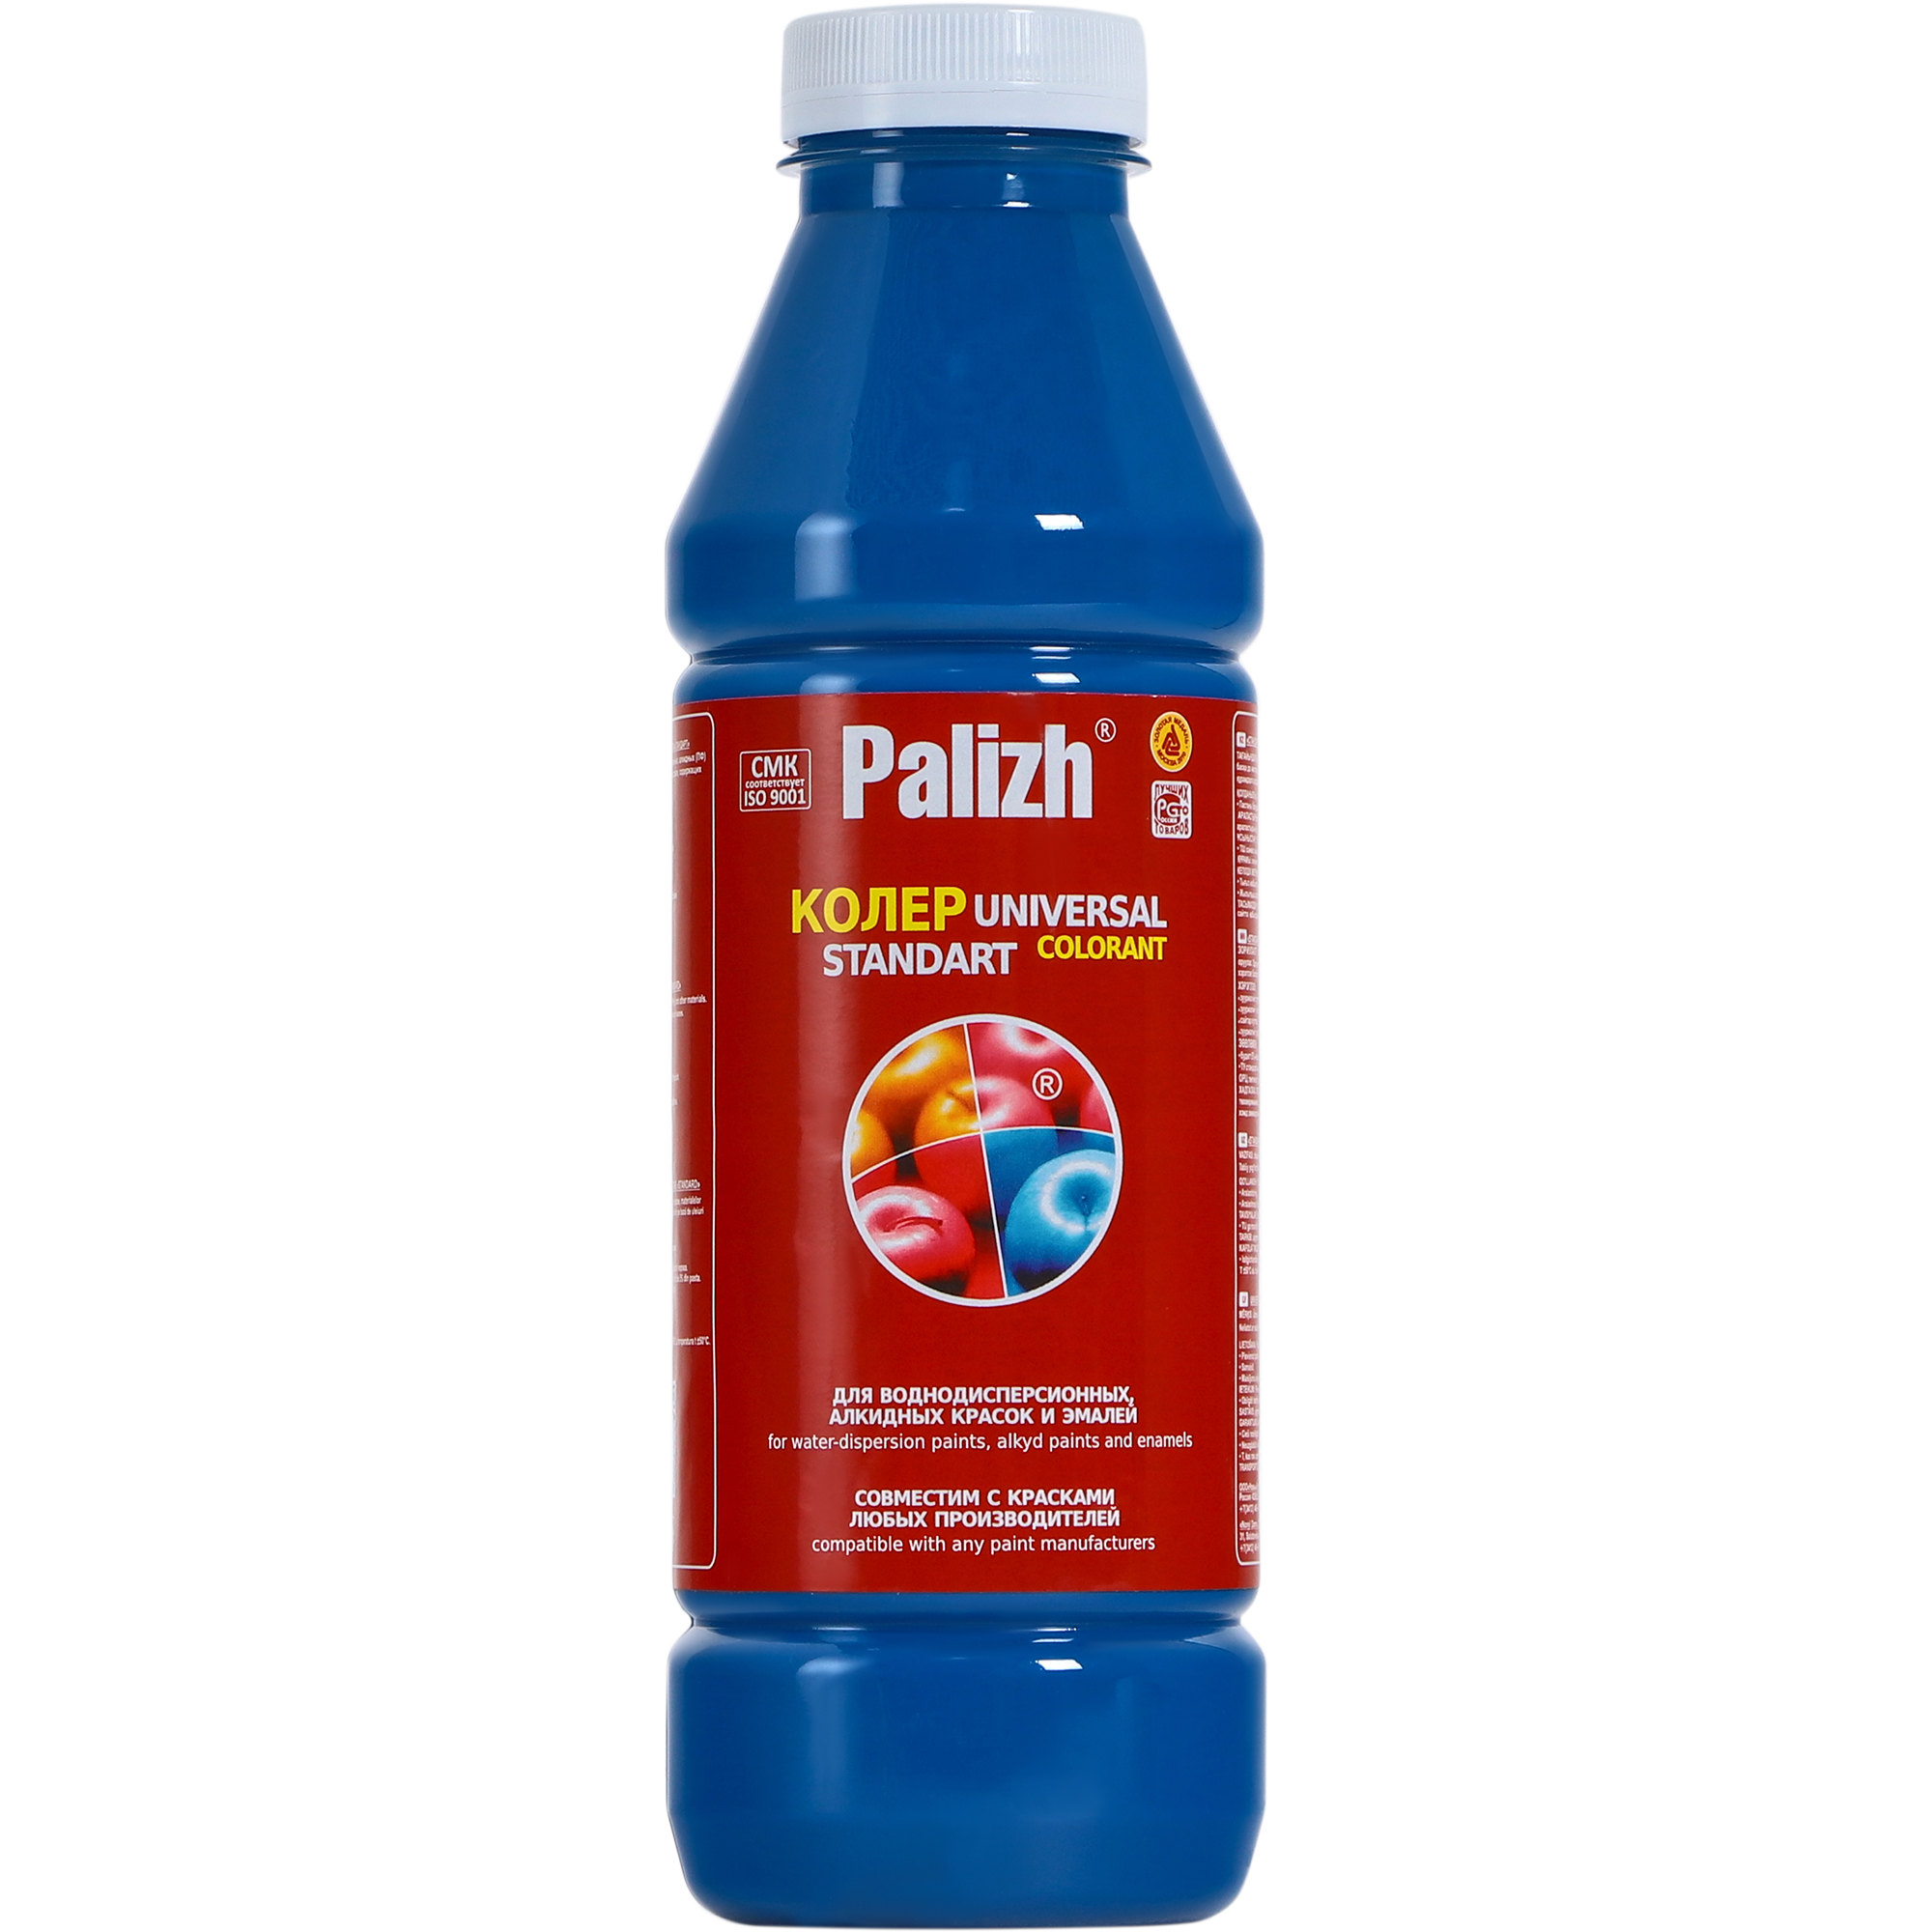 Паста универсальная колеровочная Palizh голубой - 900 мл паста универсальная колеровочная palizh голубой 100 мл